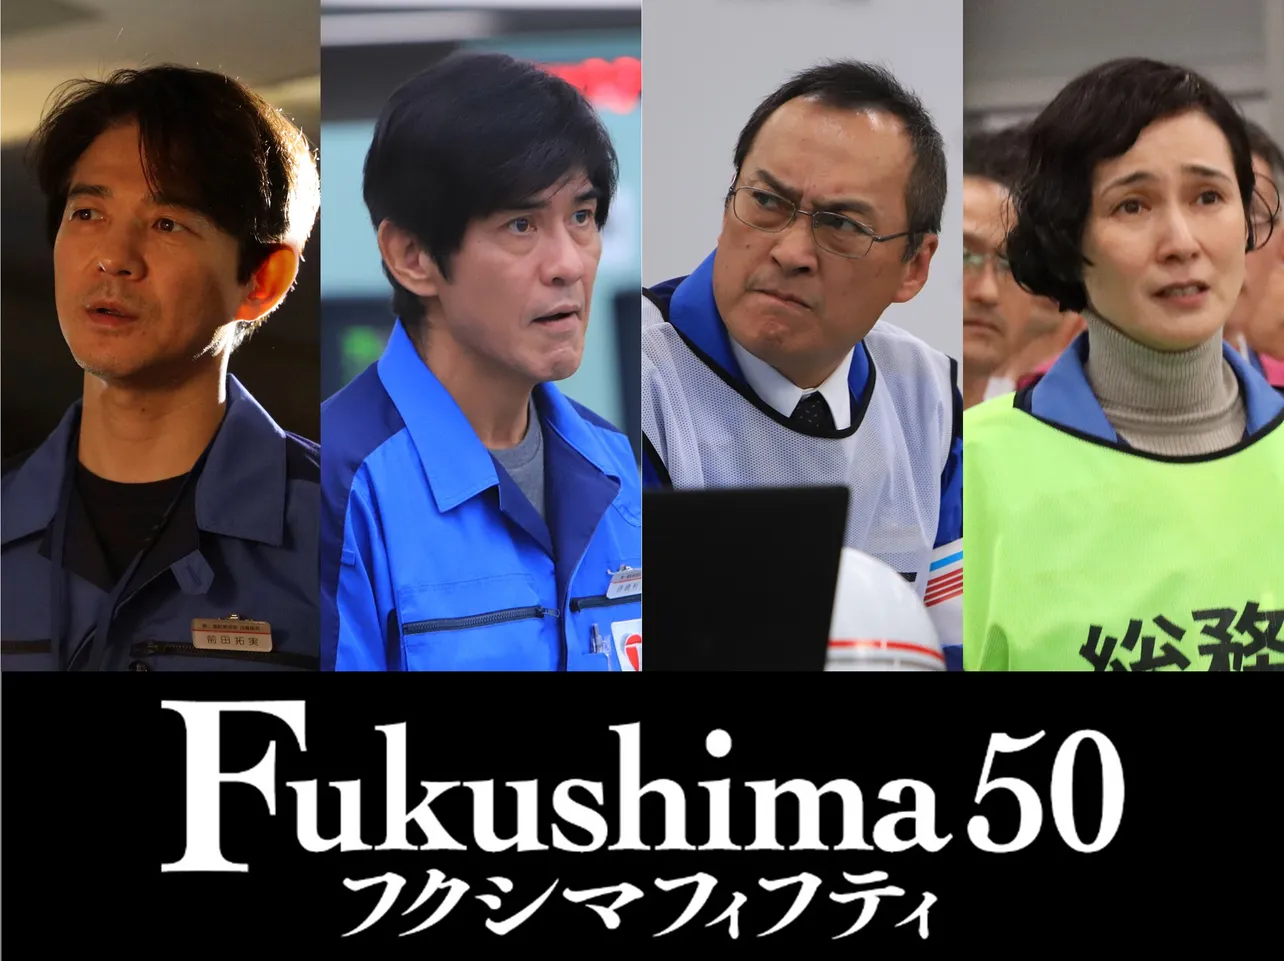 映画「Fukushima50」の特別映像が到着